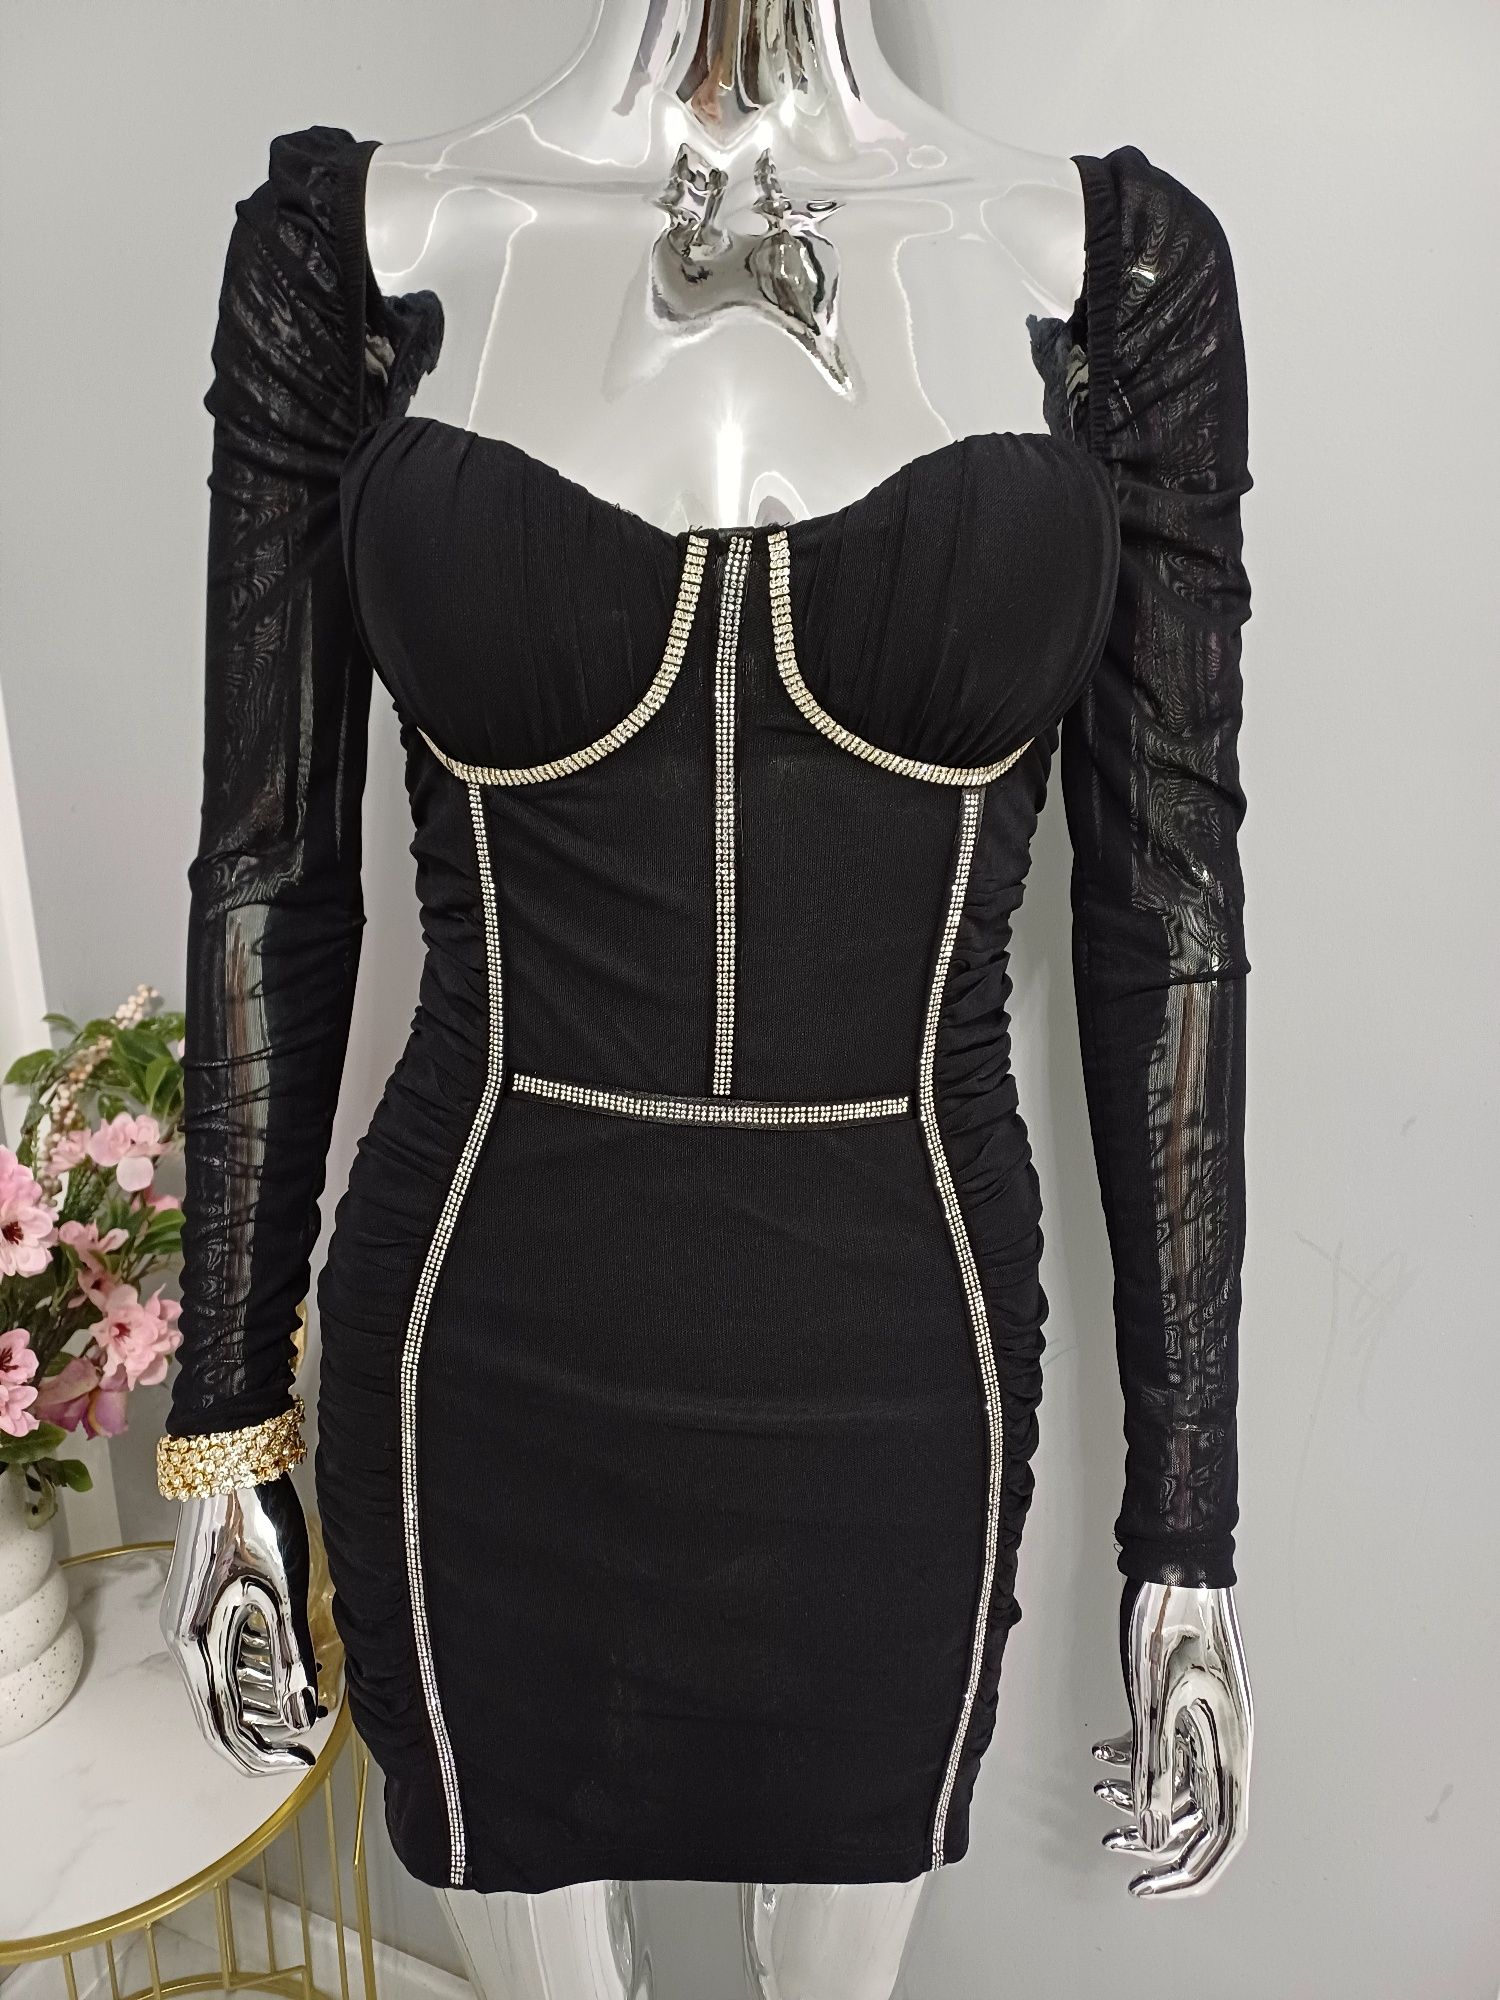 Czarna sukienka gorserowa, zdobiona cyrkoniami. Rozmiary Xs S M/L.